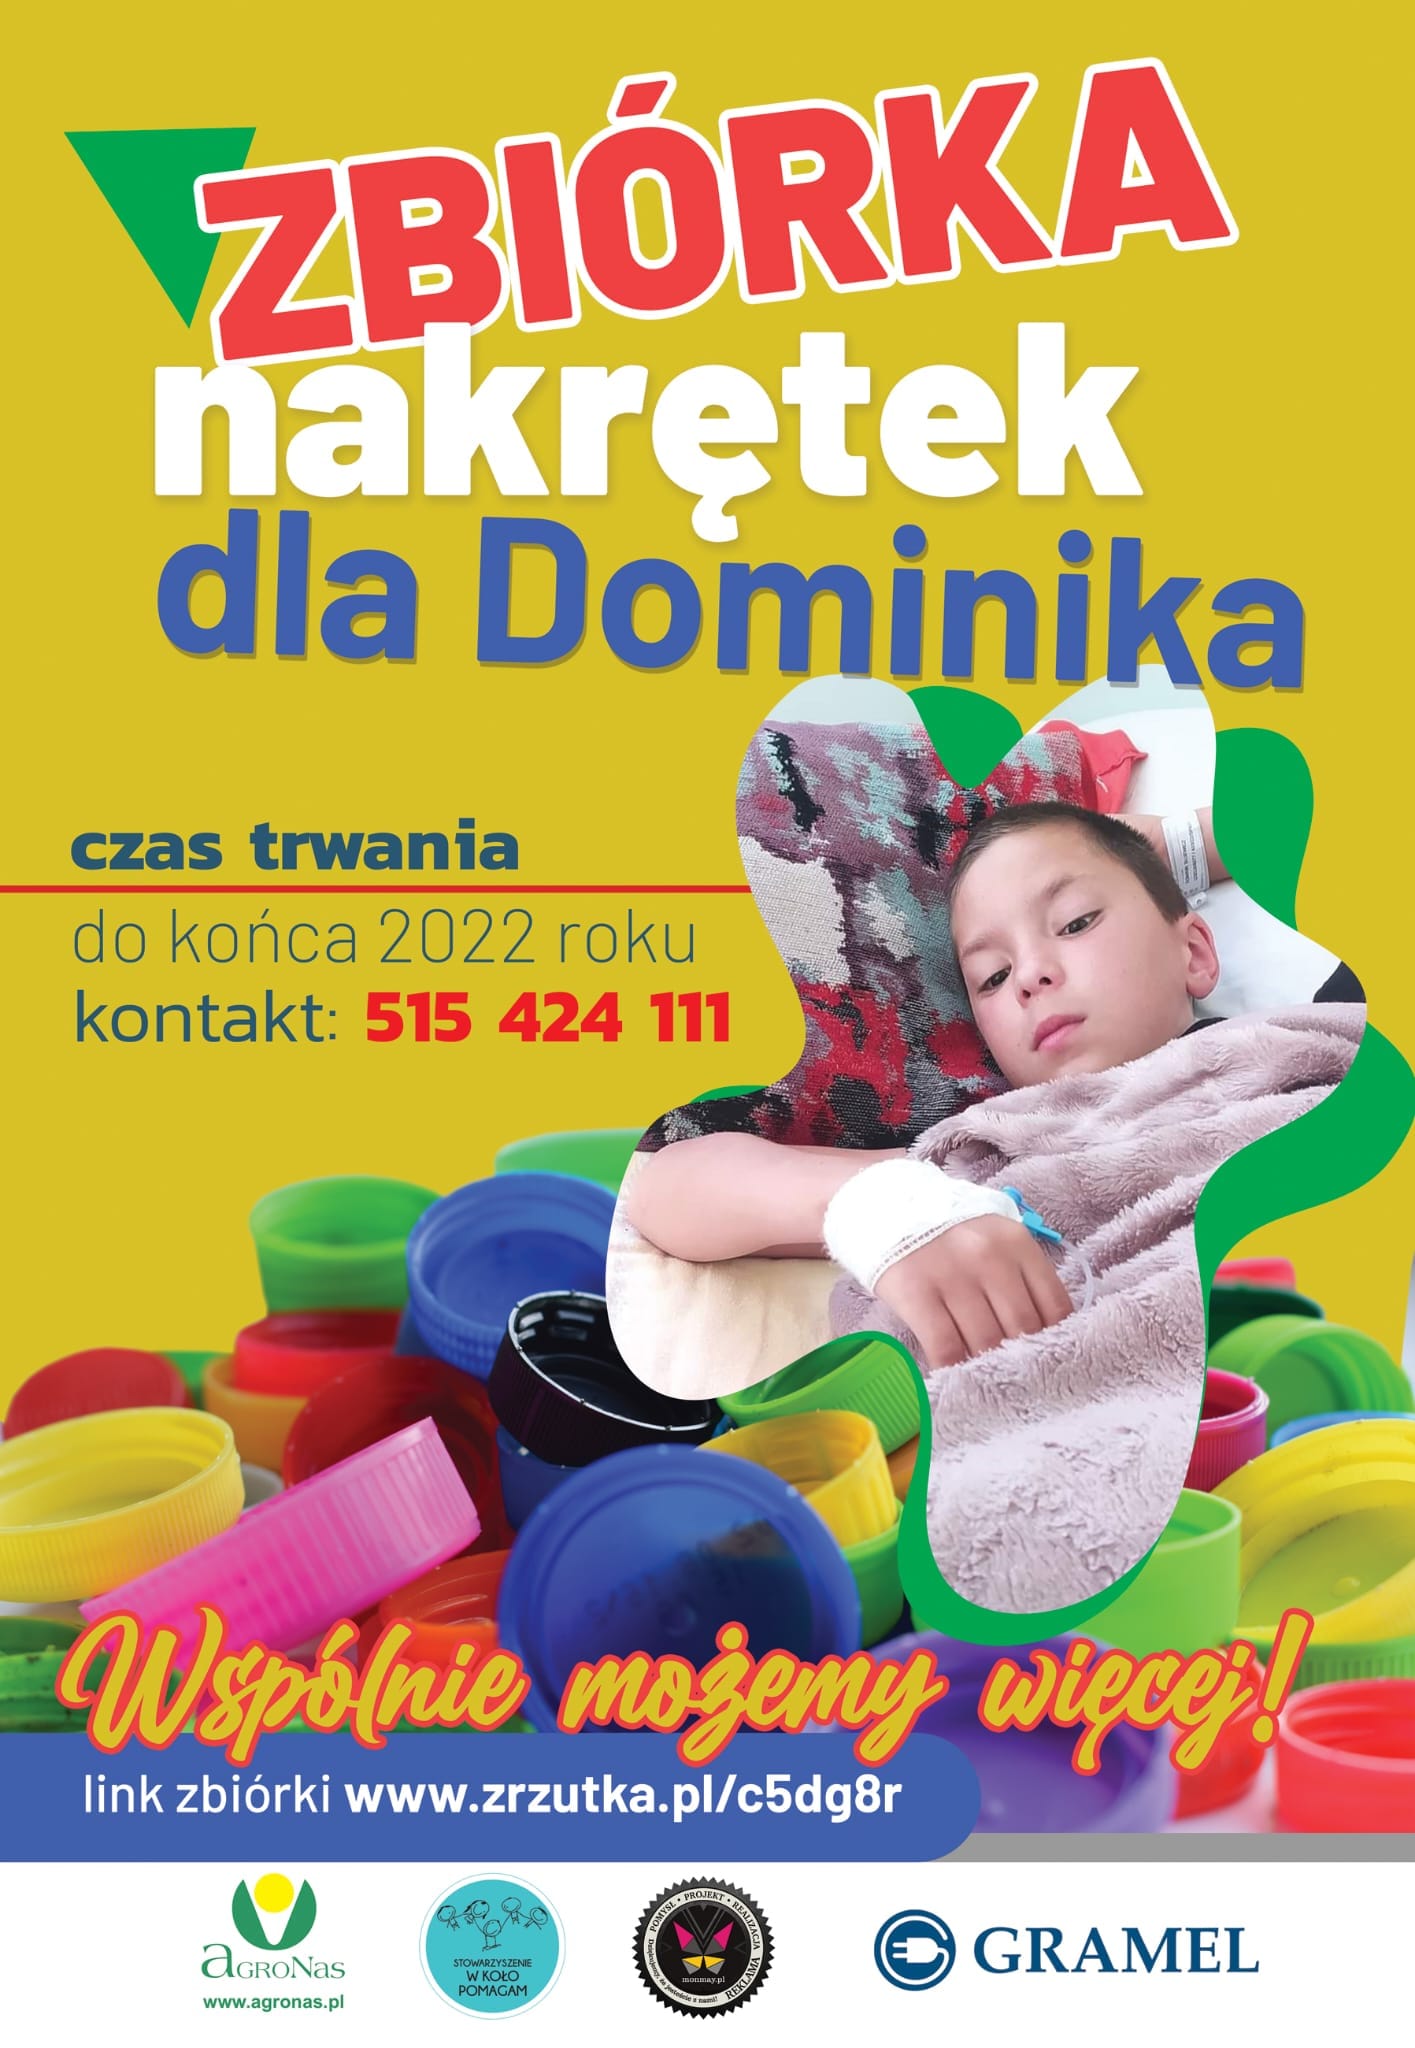 Plakat zbiórka nakrętek dla Dominika, tekst pod plakatem